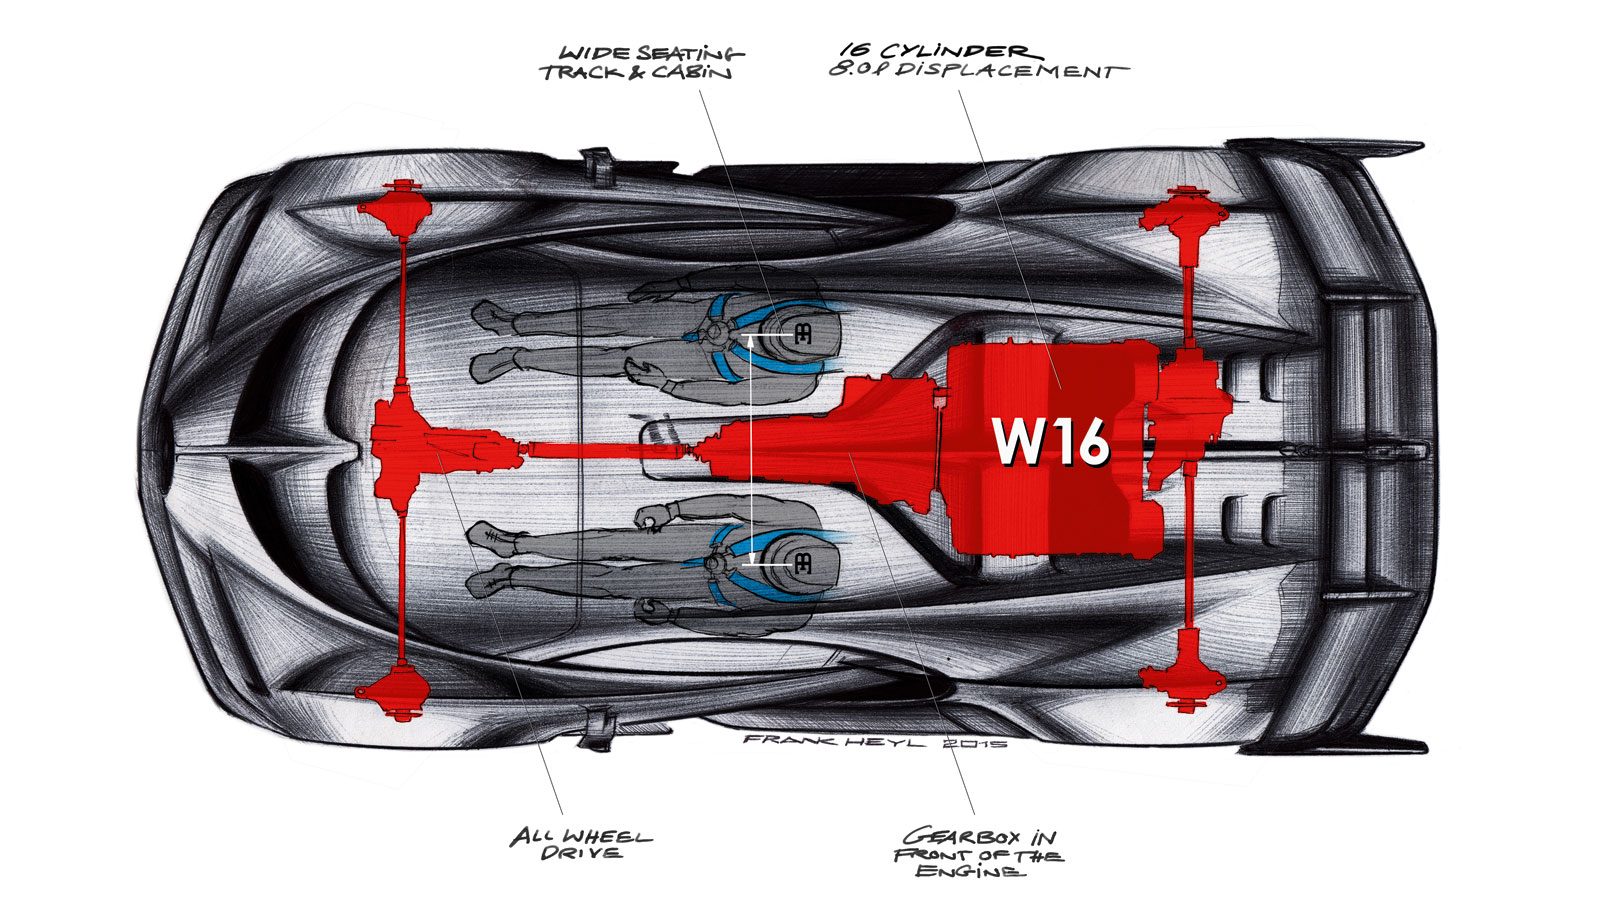 01-Bugatti-Vision-Gran-Turismo-Concept-Design-Sketch-Packaging-and-architecture.jpg